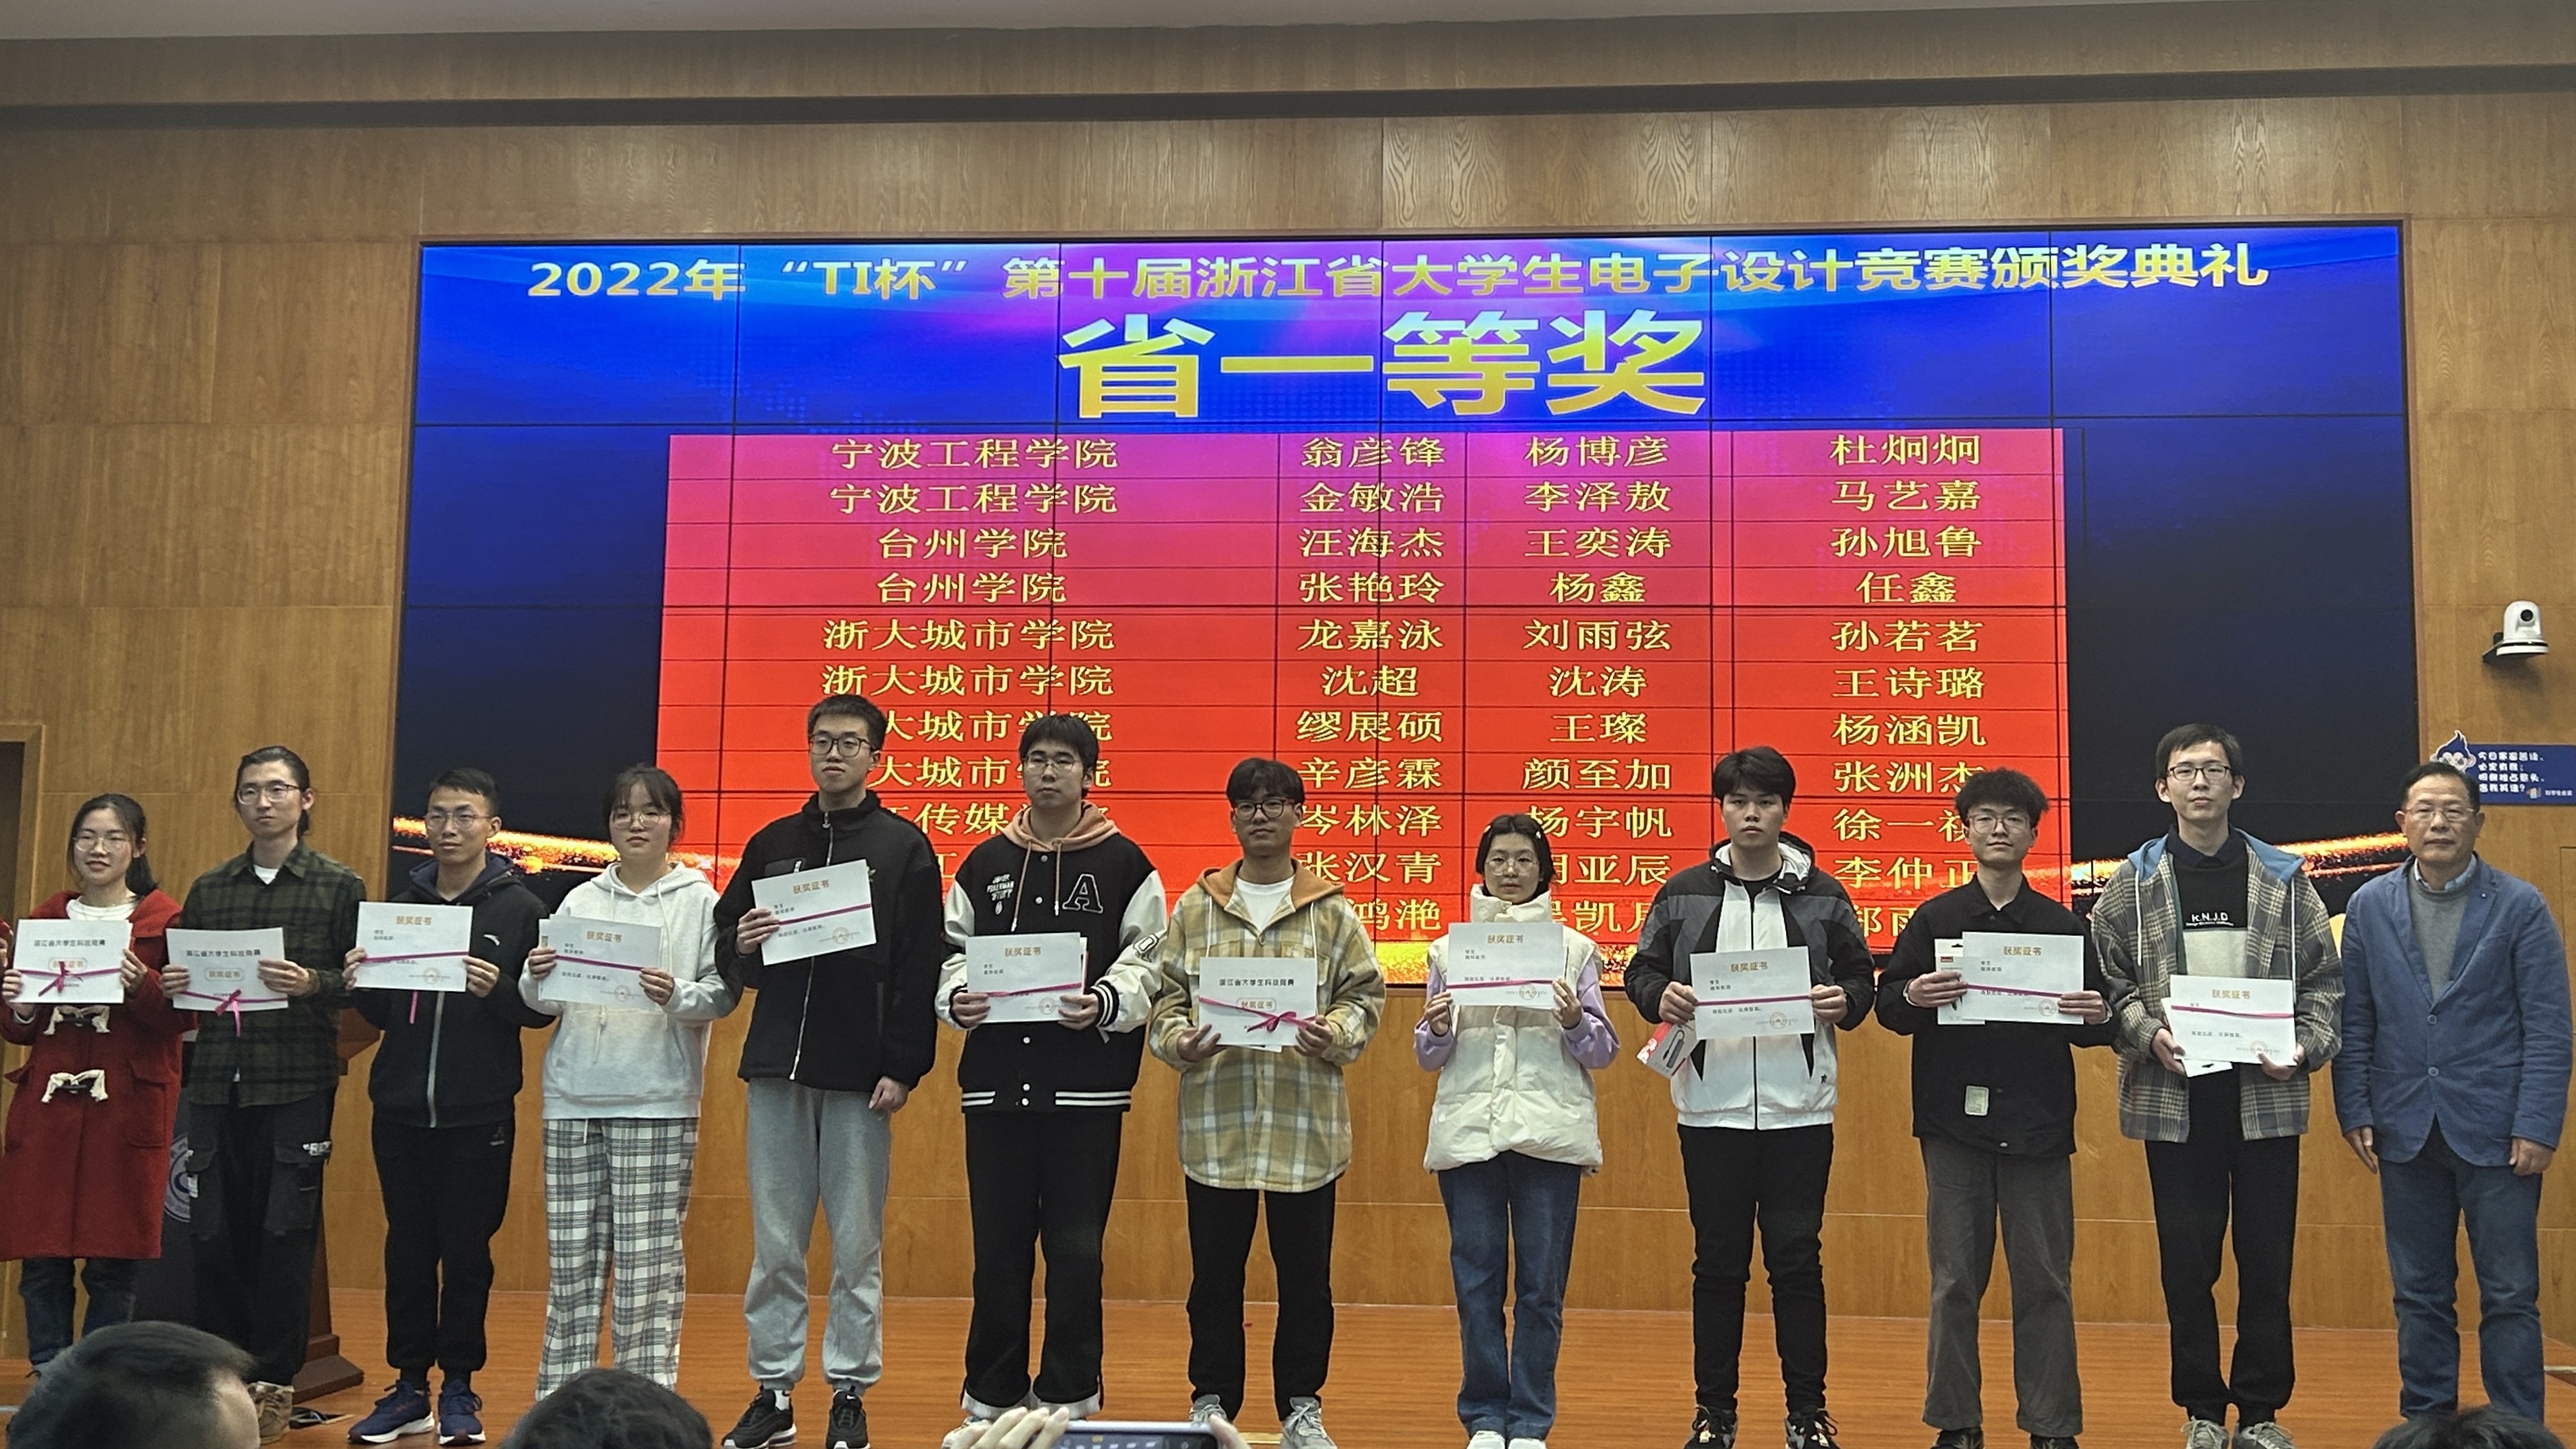 信电学院参加2022年浙江省大学生电子设计竞赛颁奖典礼